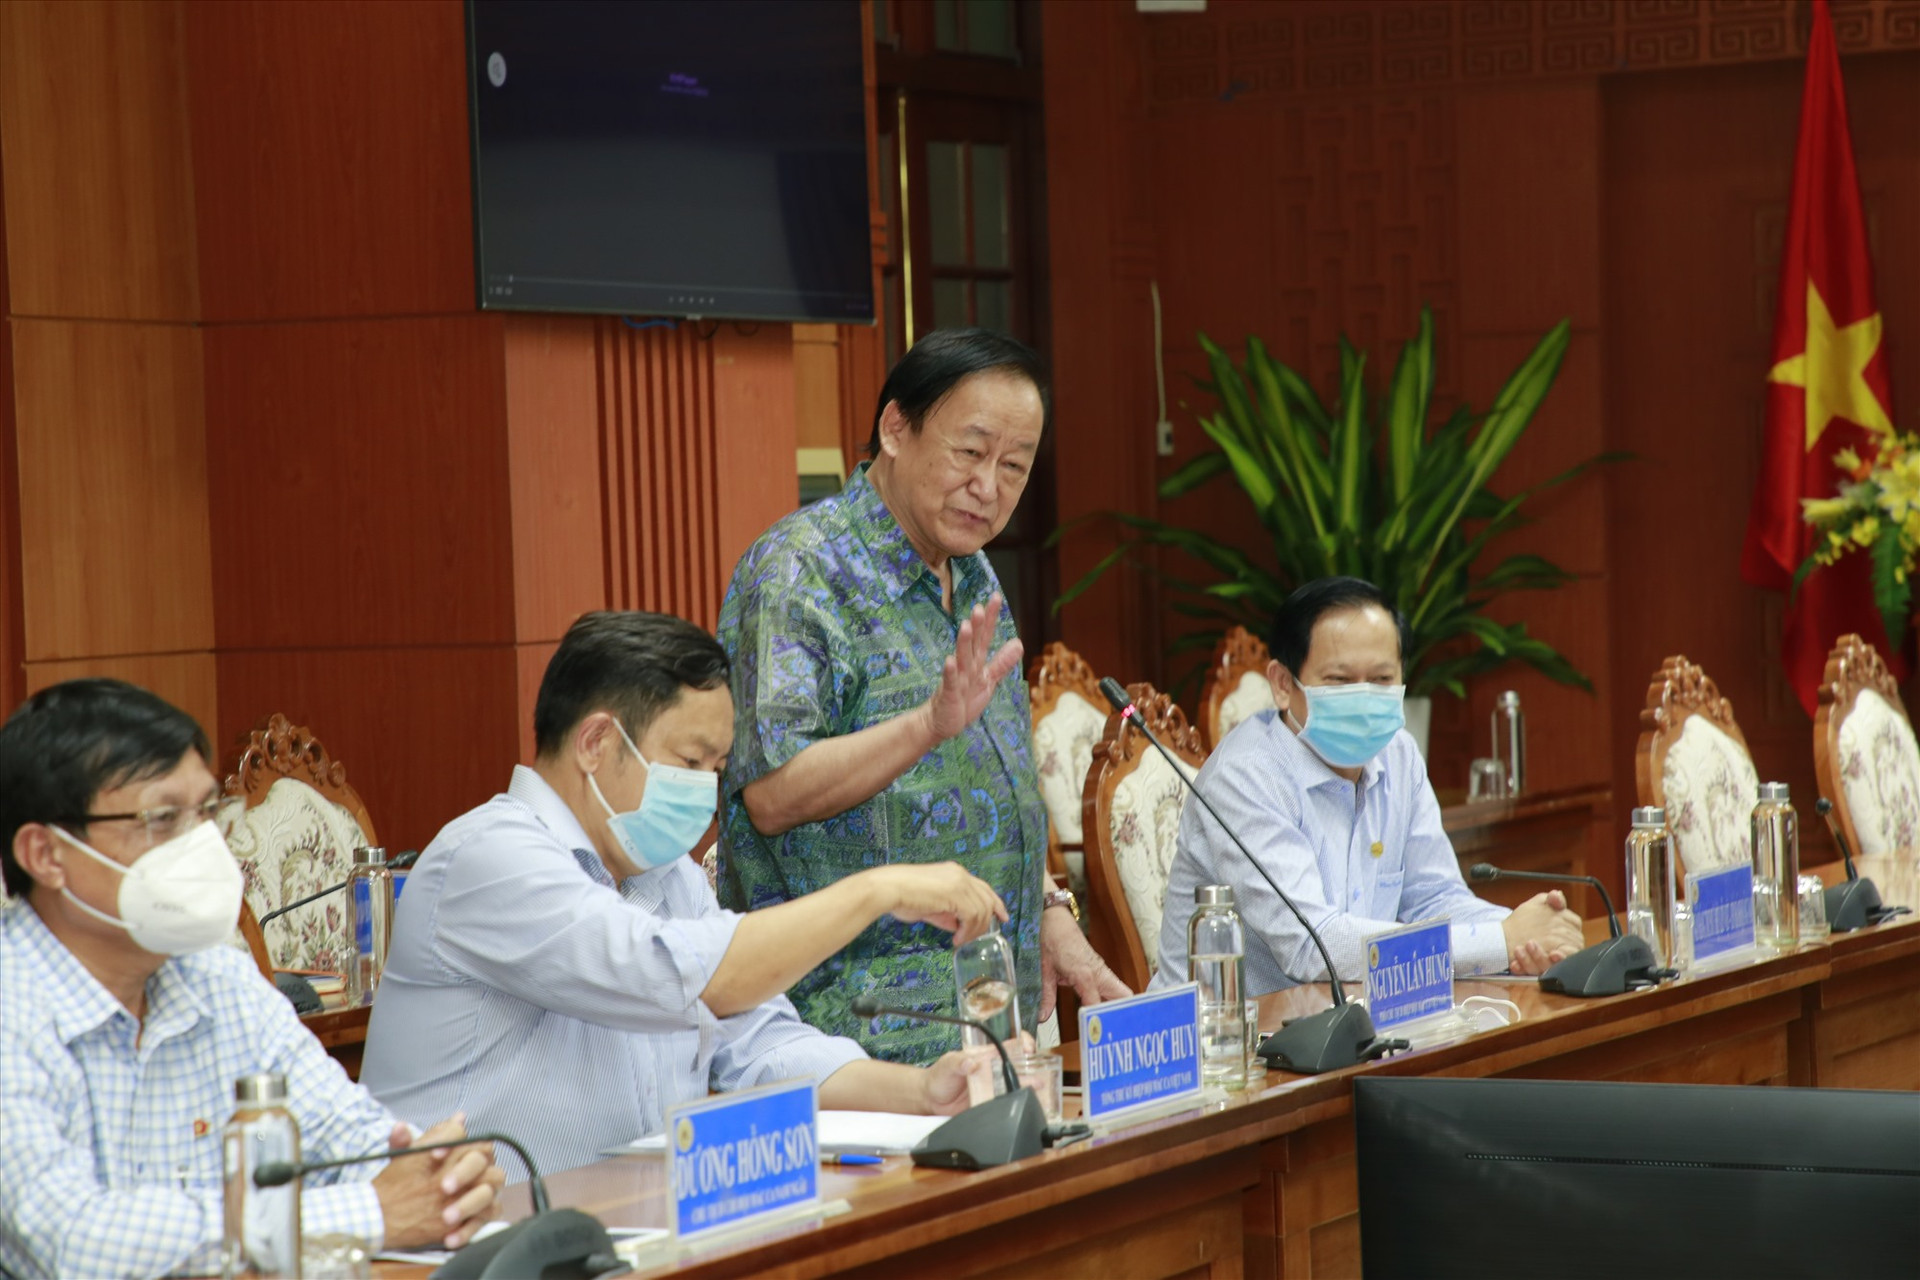 Giáo sư Nguyễn Lân Hùng - Phó Chủ tịch Hiệp hội Mắc ca Việt Nam thông tin về tình hình phát triển cây Mắc ca. Ảnh: G.P